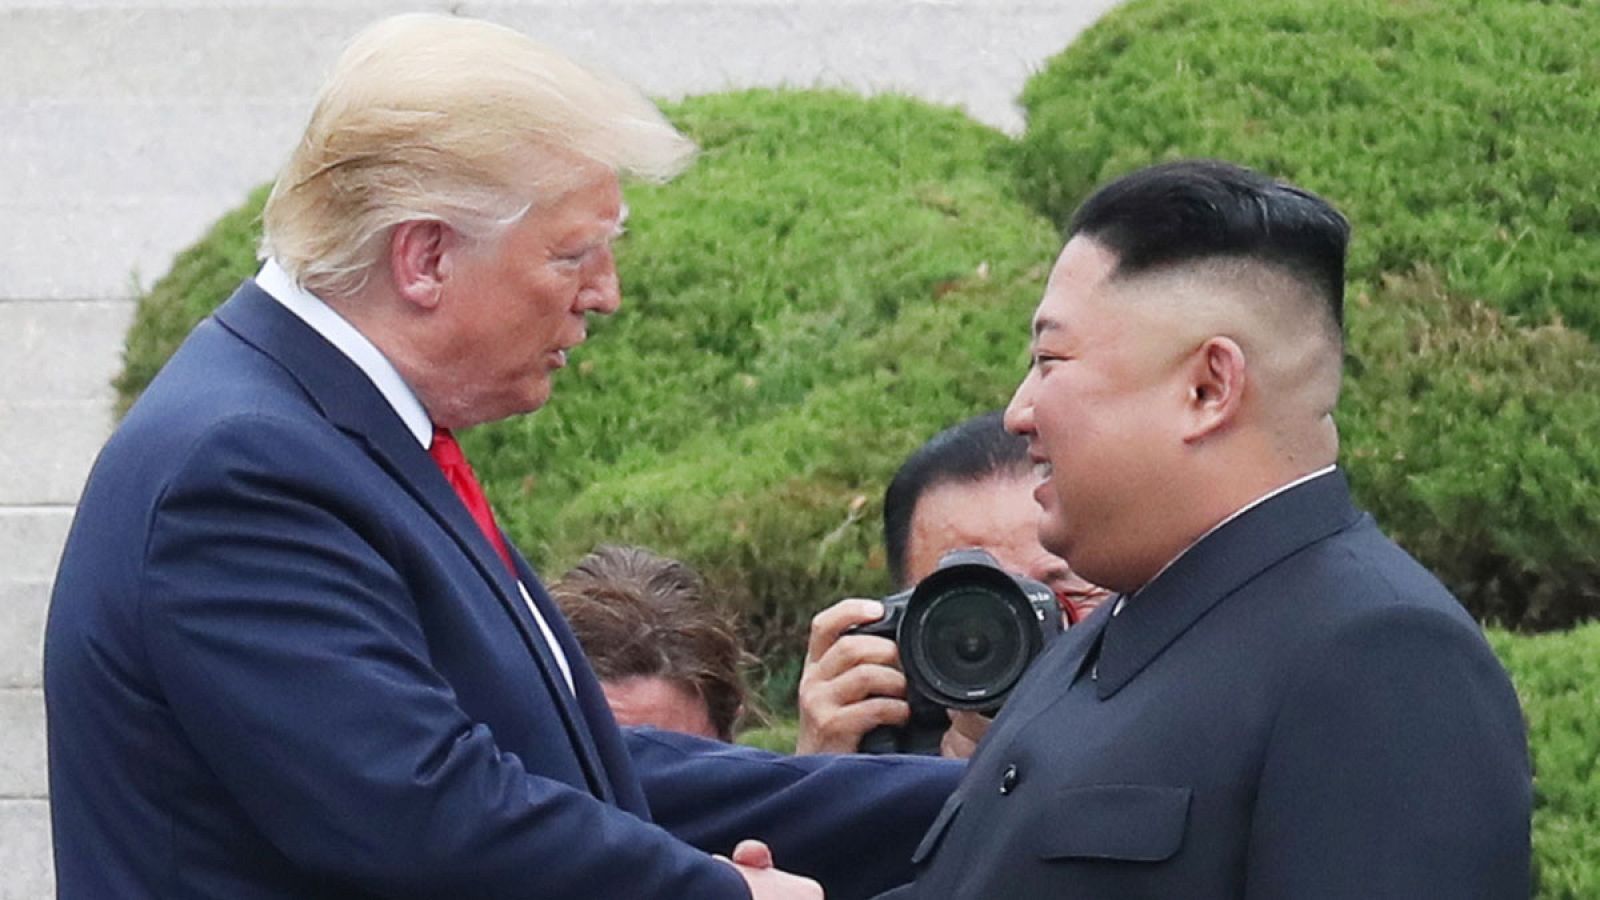 Imagen del encuentro entre el presidente estadounidense, Donald Trump, y  el líder norcoreano, Kim Jong-un, en la Zona Desmilitarizada (DMZ) que divide las dos Coreas el pasado 30 de junio de 2019.